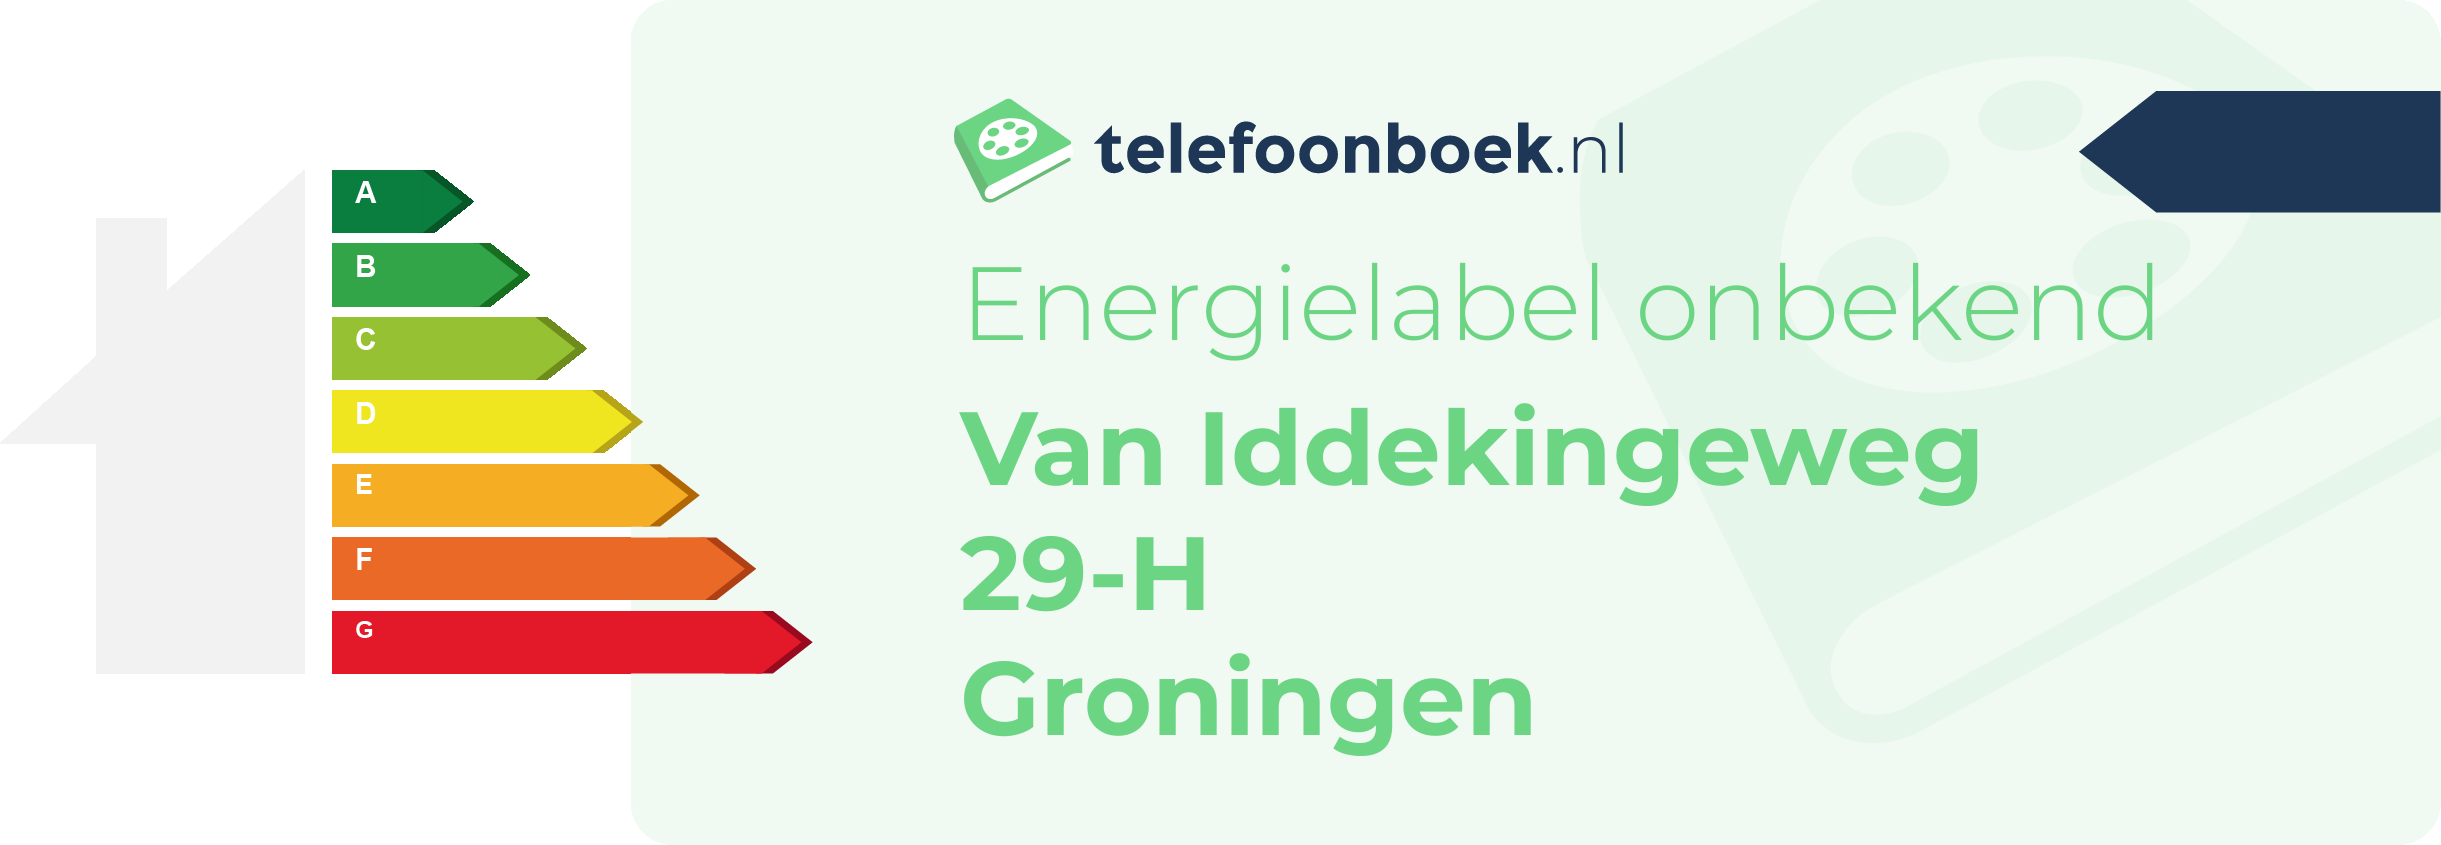 Energielabel Van Iddekingeweg 29-H Groningen